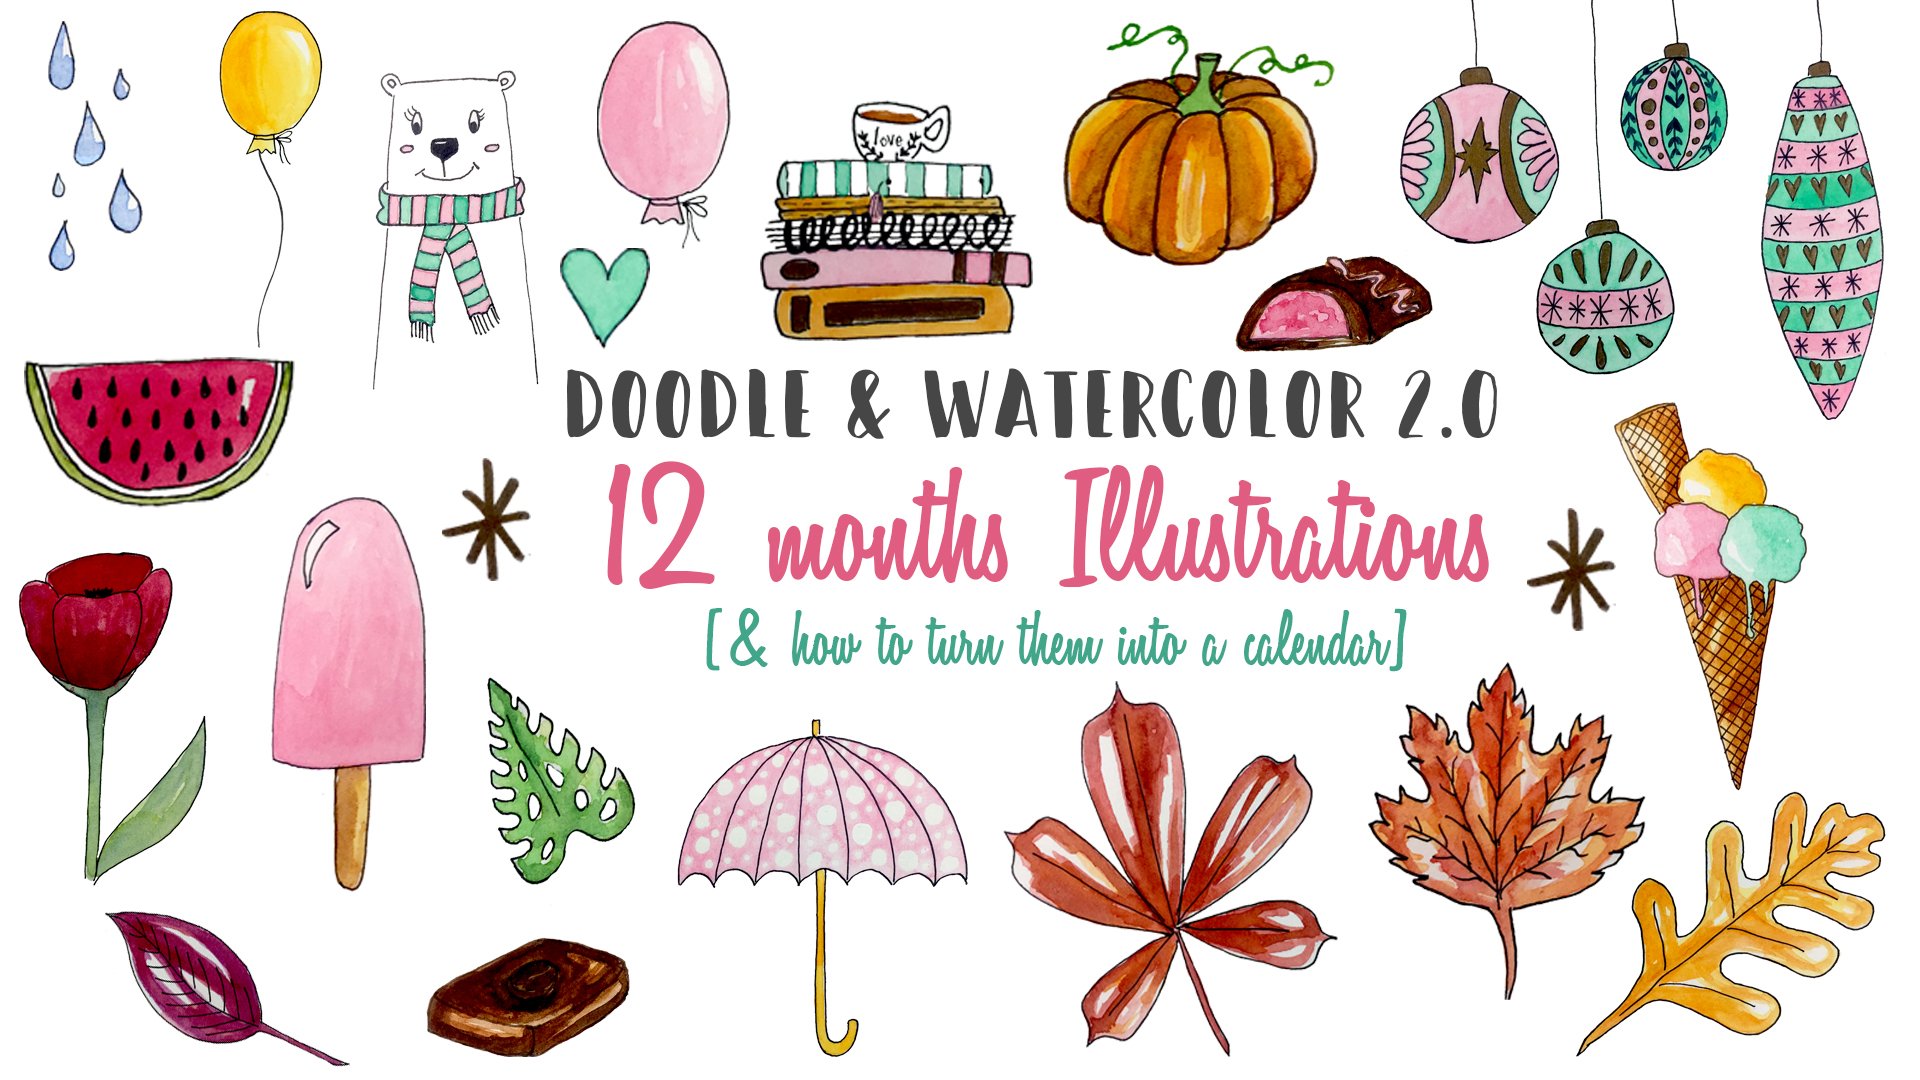 آموزش Doodle & Watercolor 2.0: تصاویر 12 ماهه (و نحوه تبدیل آنها به تقویم)